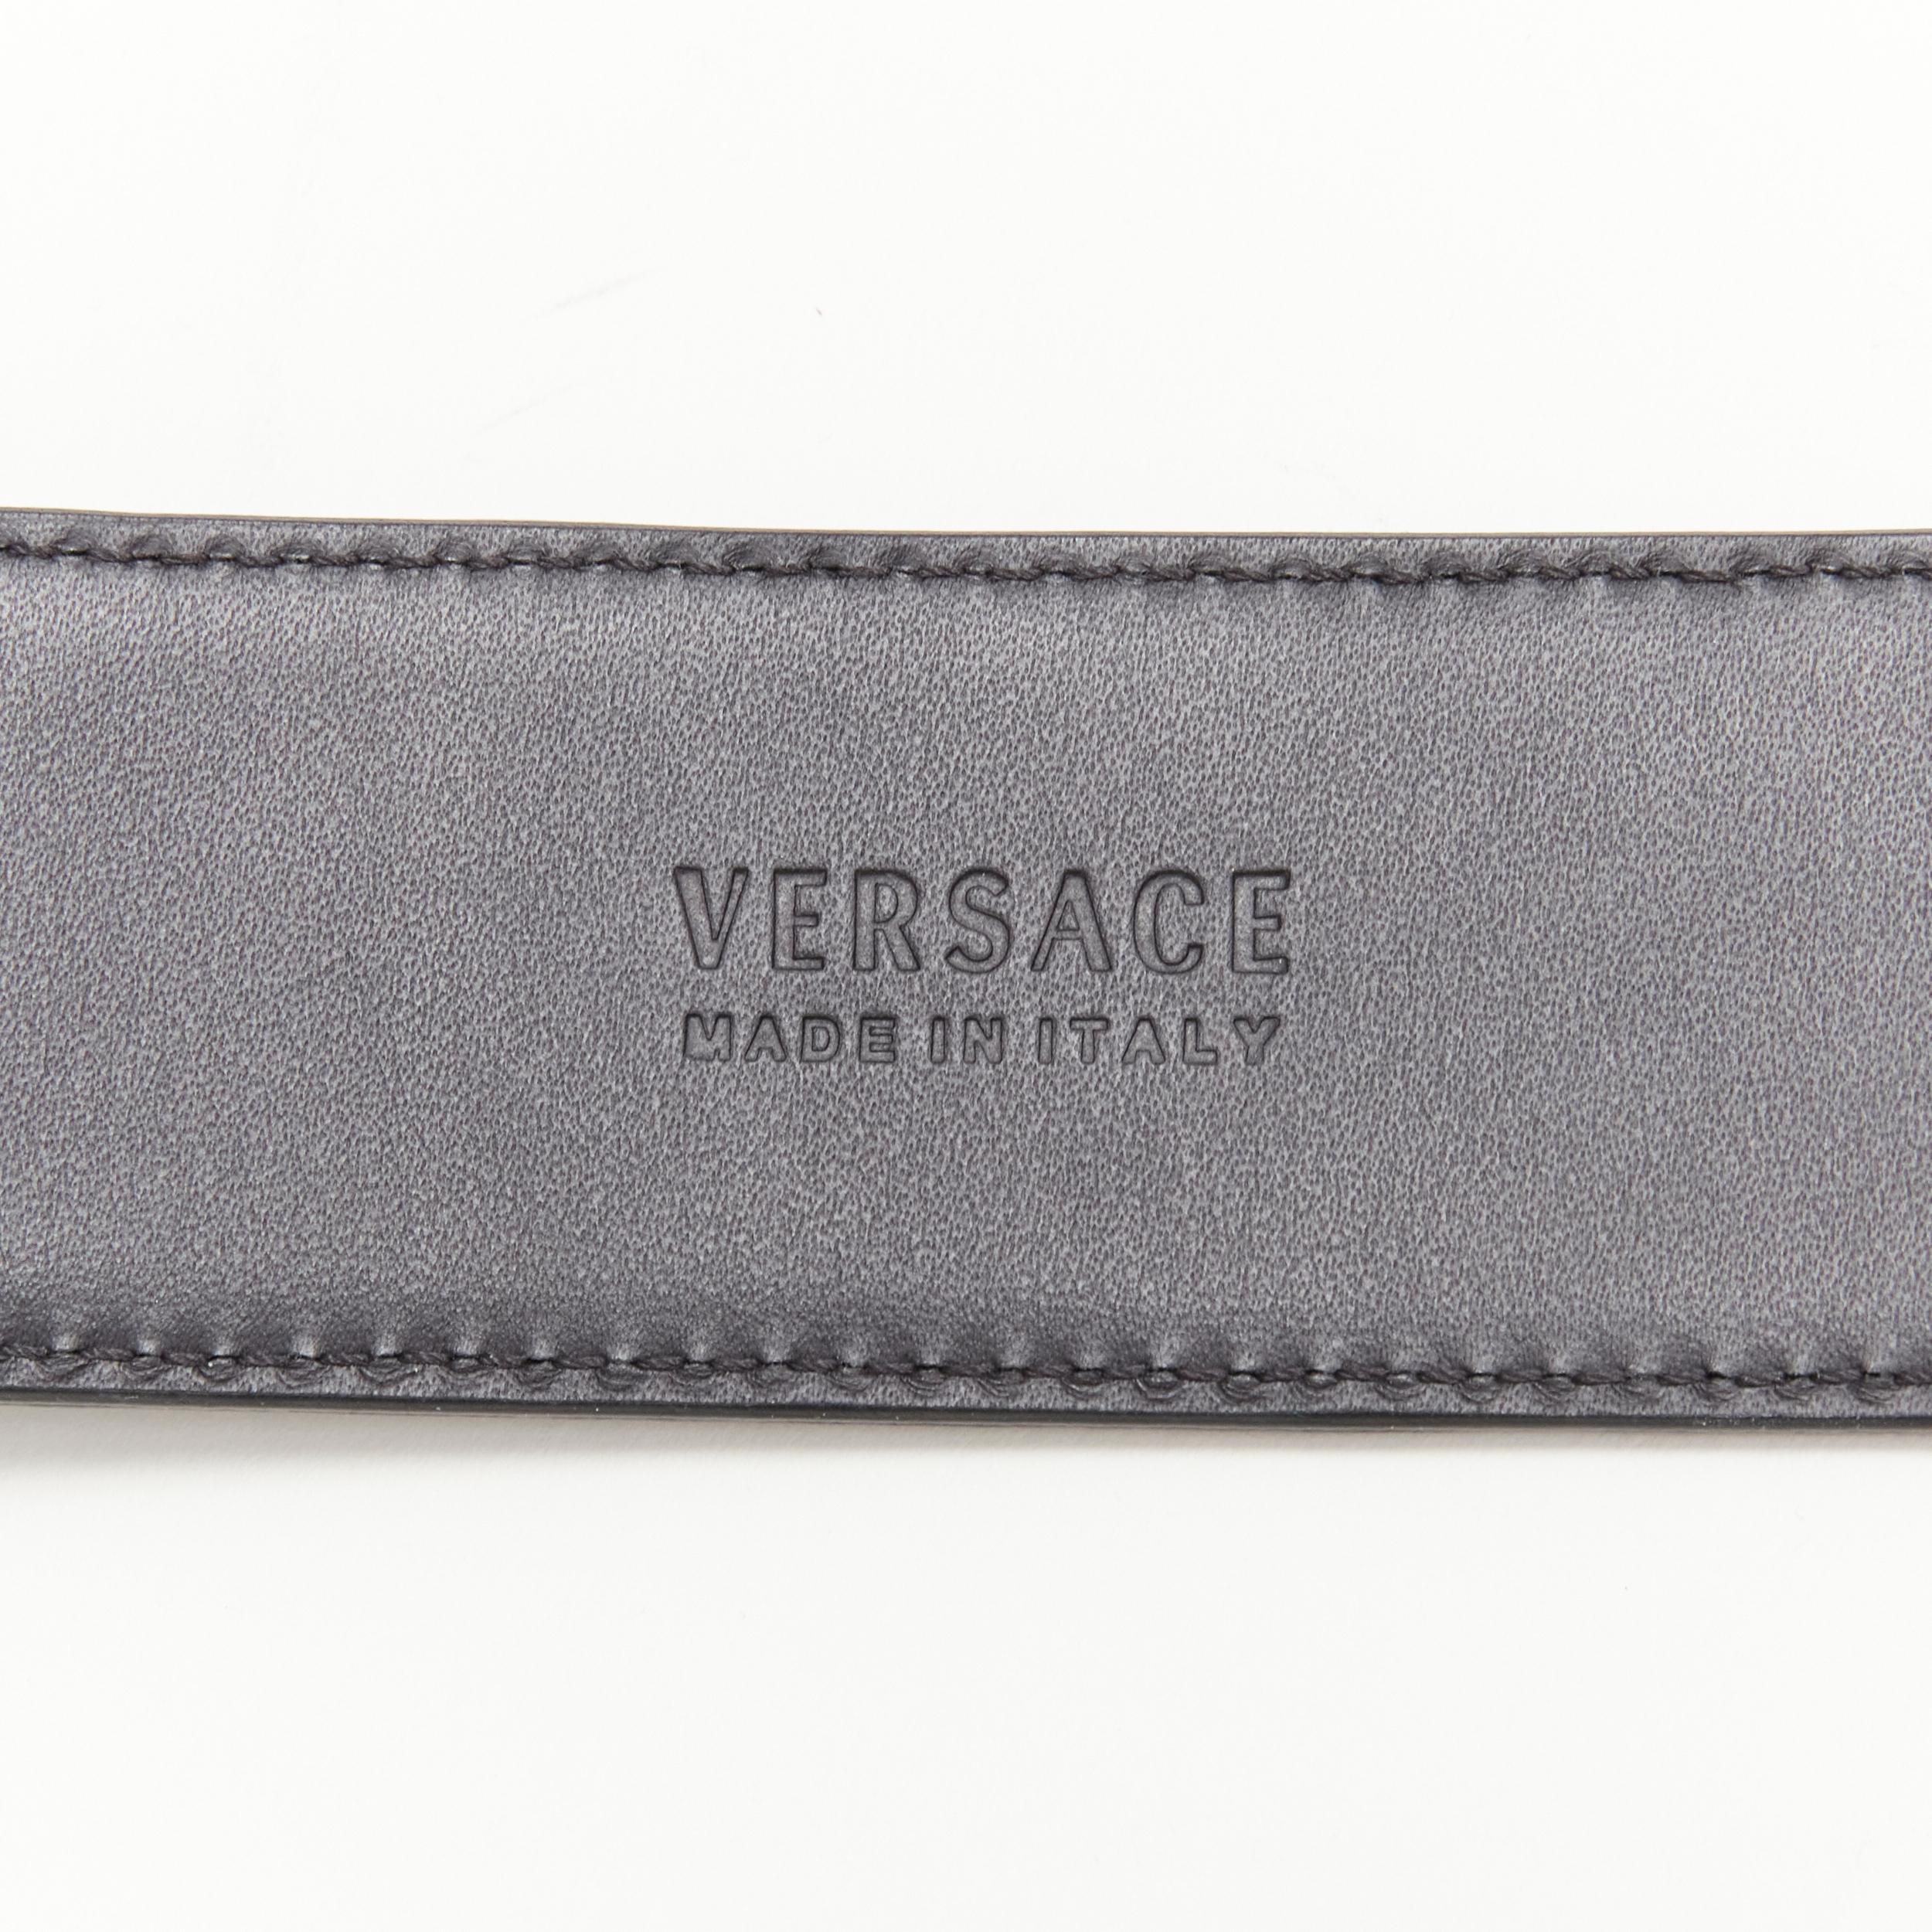 new VERSACE $1200 La Medusa gold buckle black croc leather belt 80cm 30-34